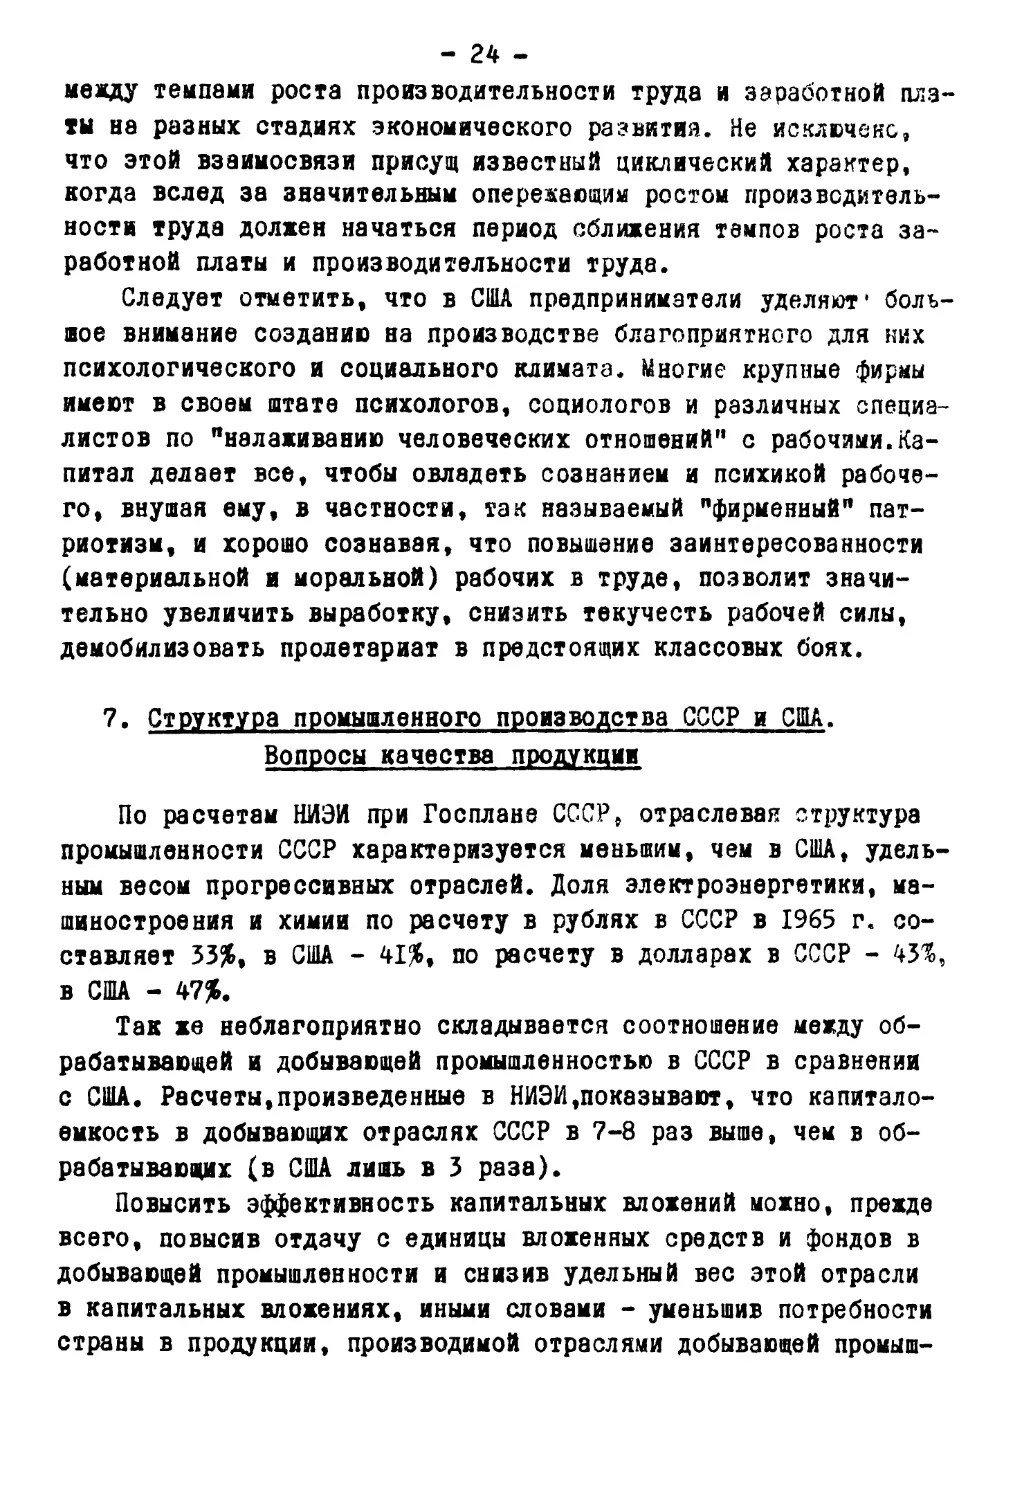 7. Структура промышленного производства СССР и США. Вопросы качества продукции